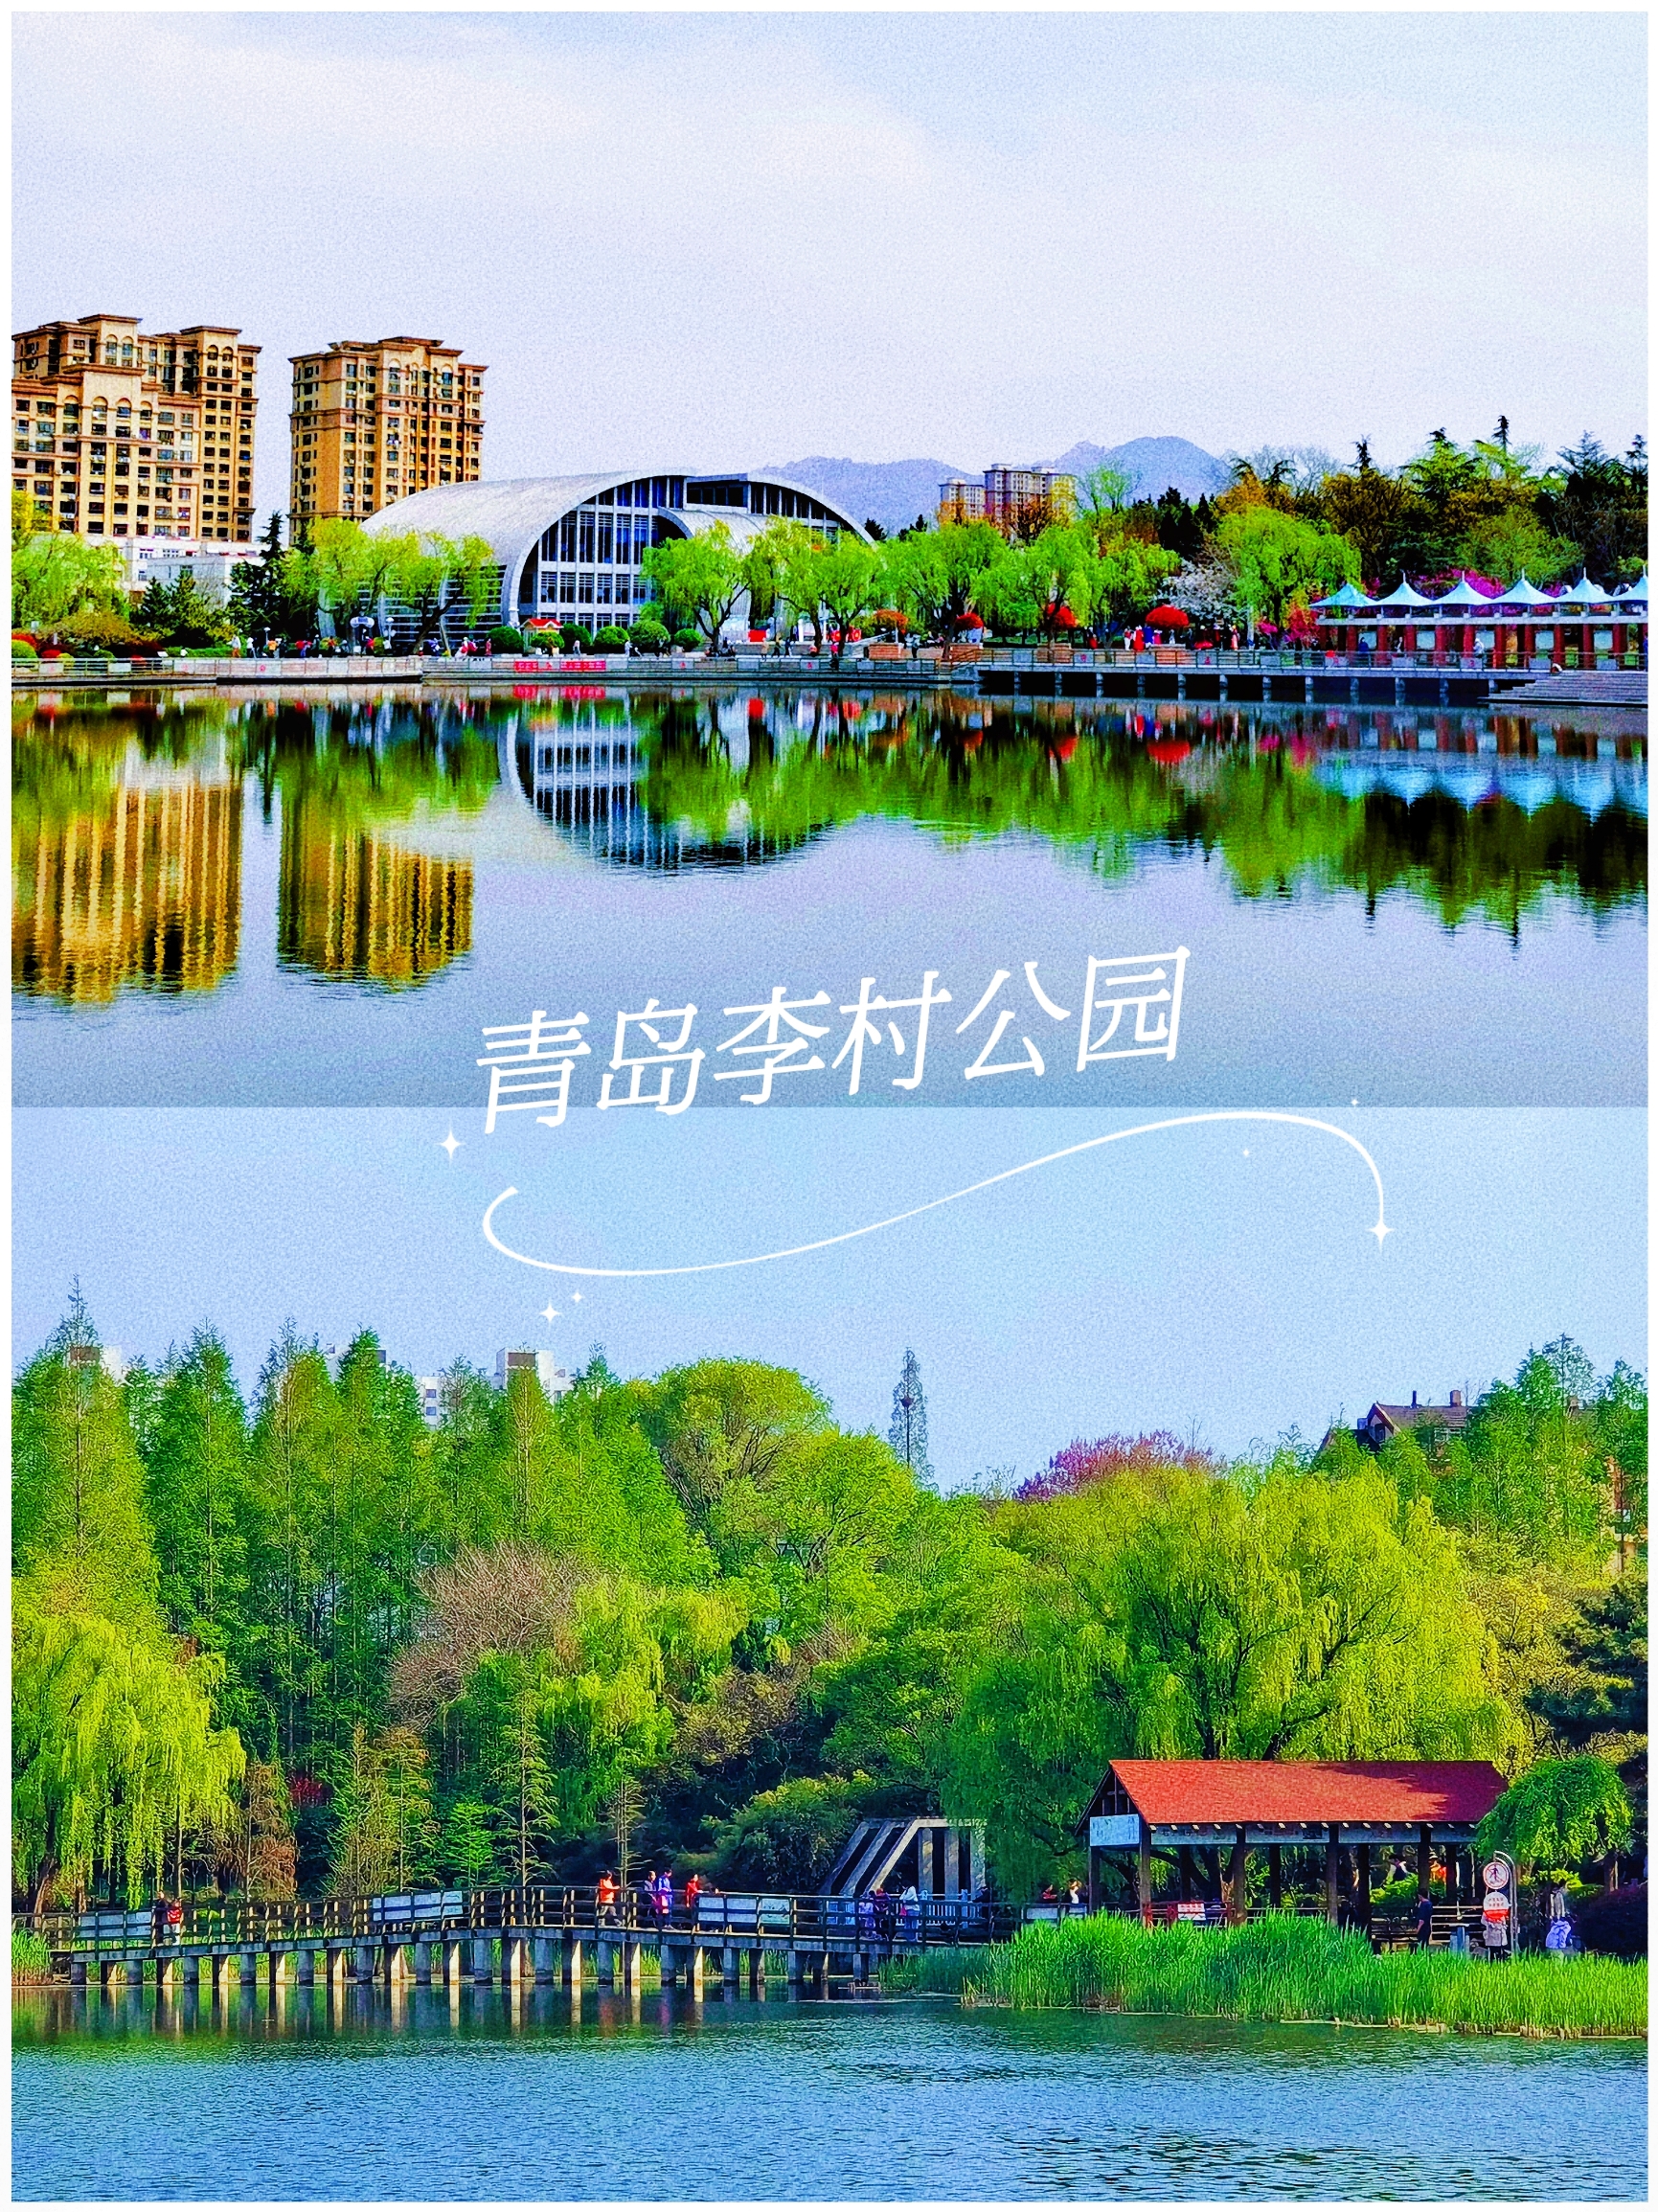 青岛李村公园你玩得可真花啊‼️双樱盛开灿若云霞·赏樱游园攻略